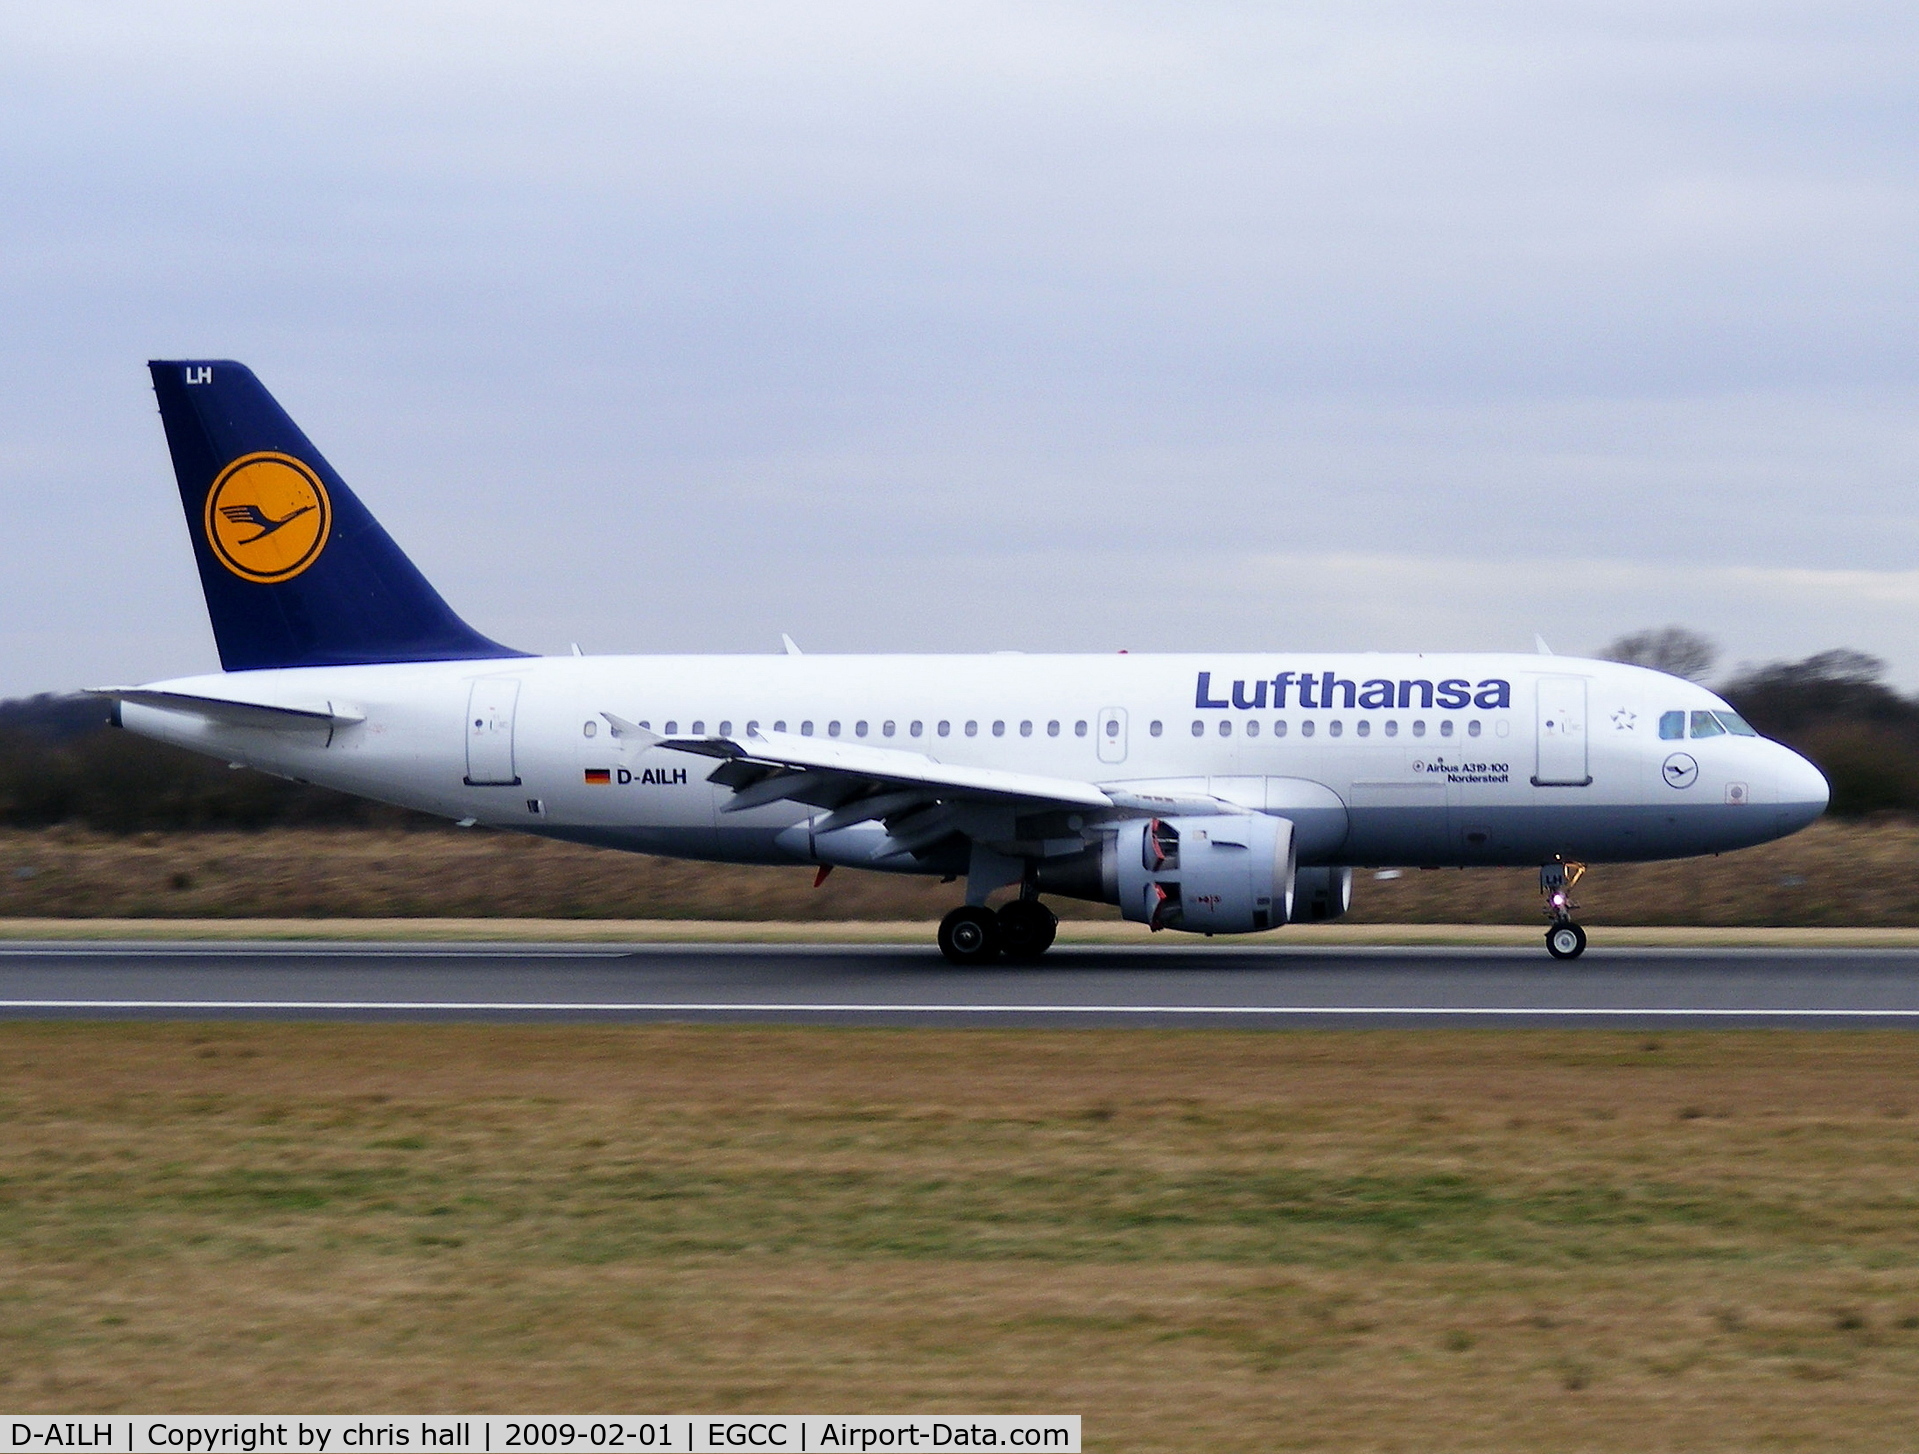 D-AILH, 1997 Airbus A319-114 C/N 641, Lufthansa